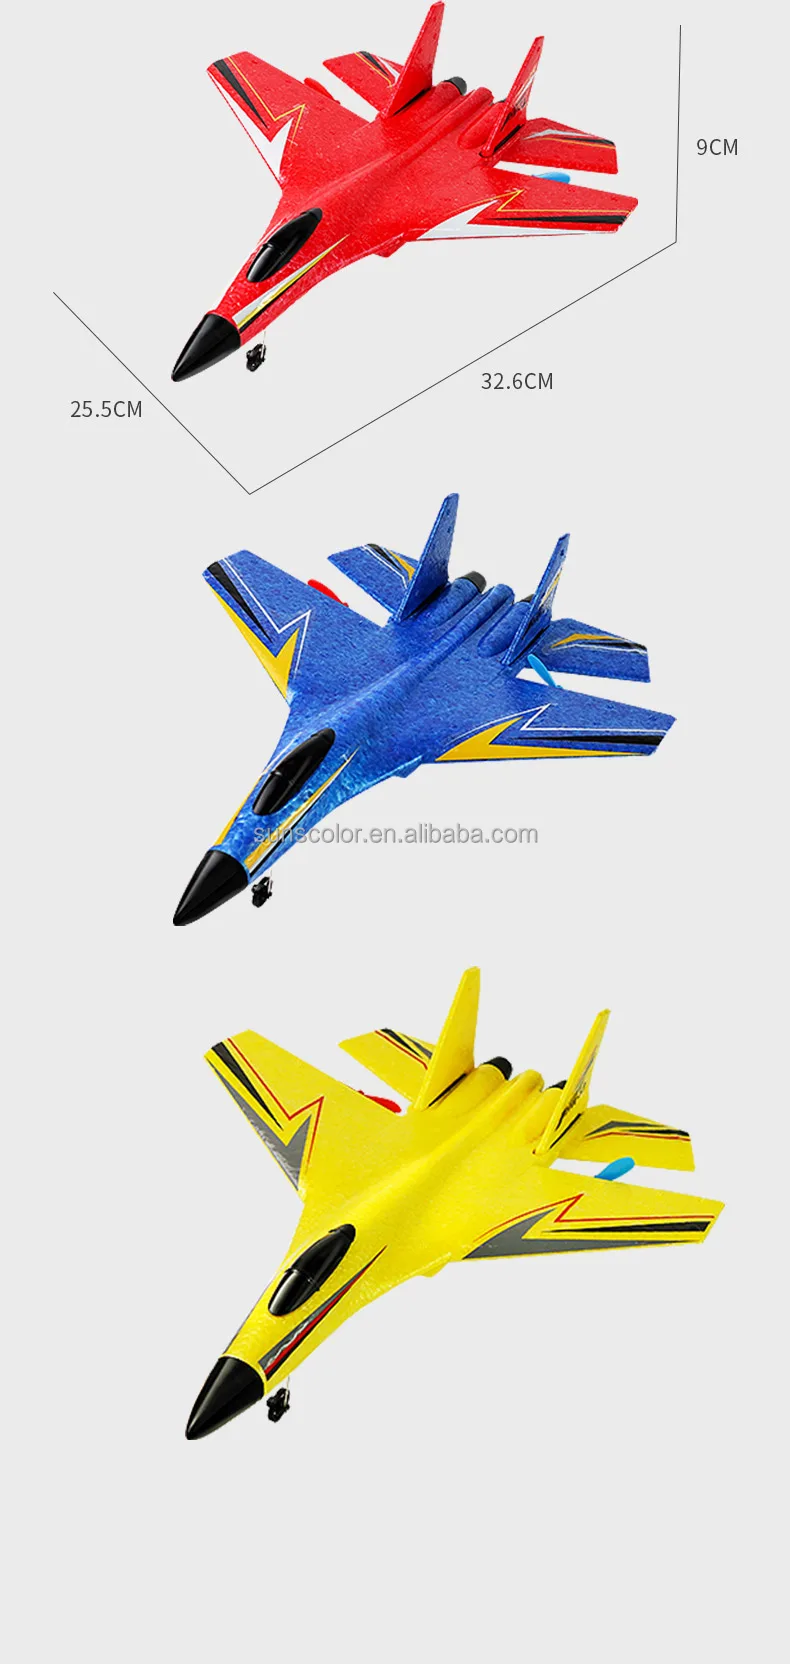 Brinquedo De Avião Modelo 2.4g Com Controle Remoto Su-57